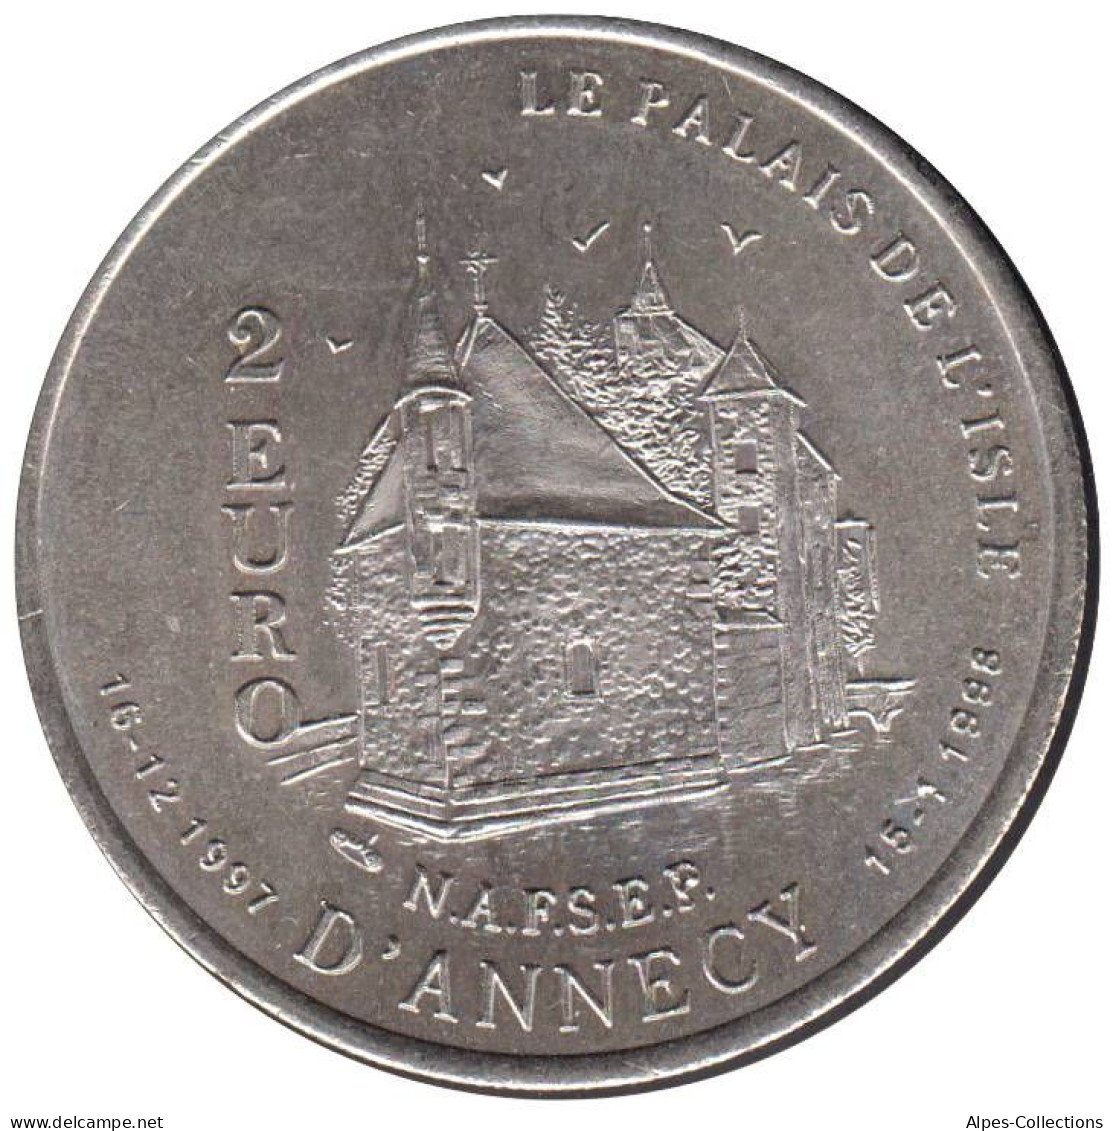 ANNECY - EU0020.2 - 2 EURO DES VILLES - Réf: T234 - 1997 - Euros Of The Cities